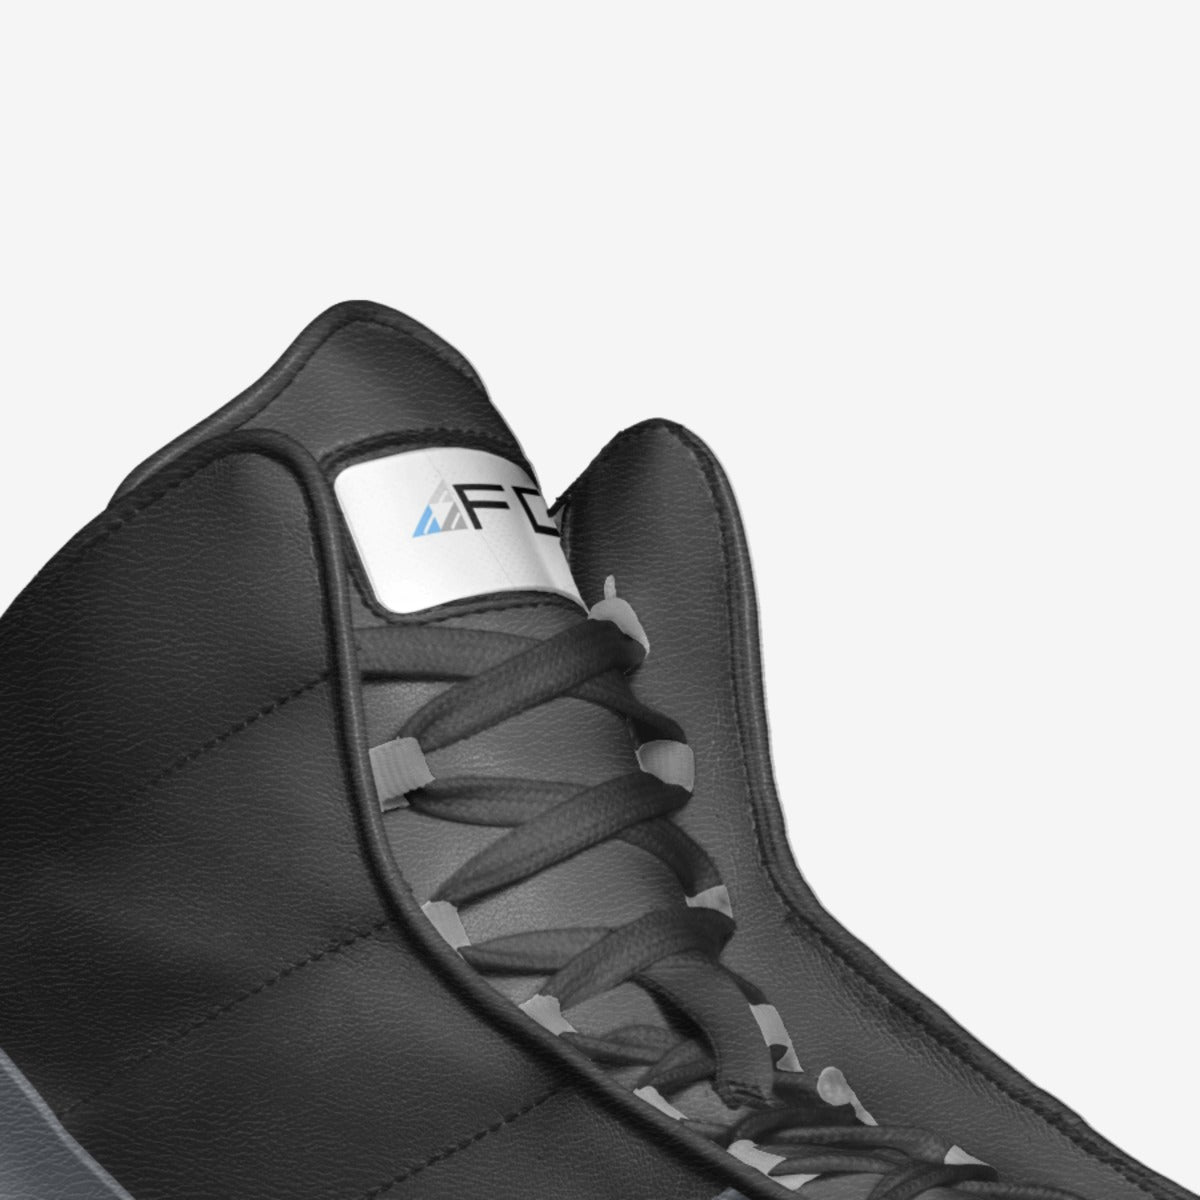 Forever Drift Prime 1 Mark 1 Shoes - Black Edition - Unisex